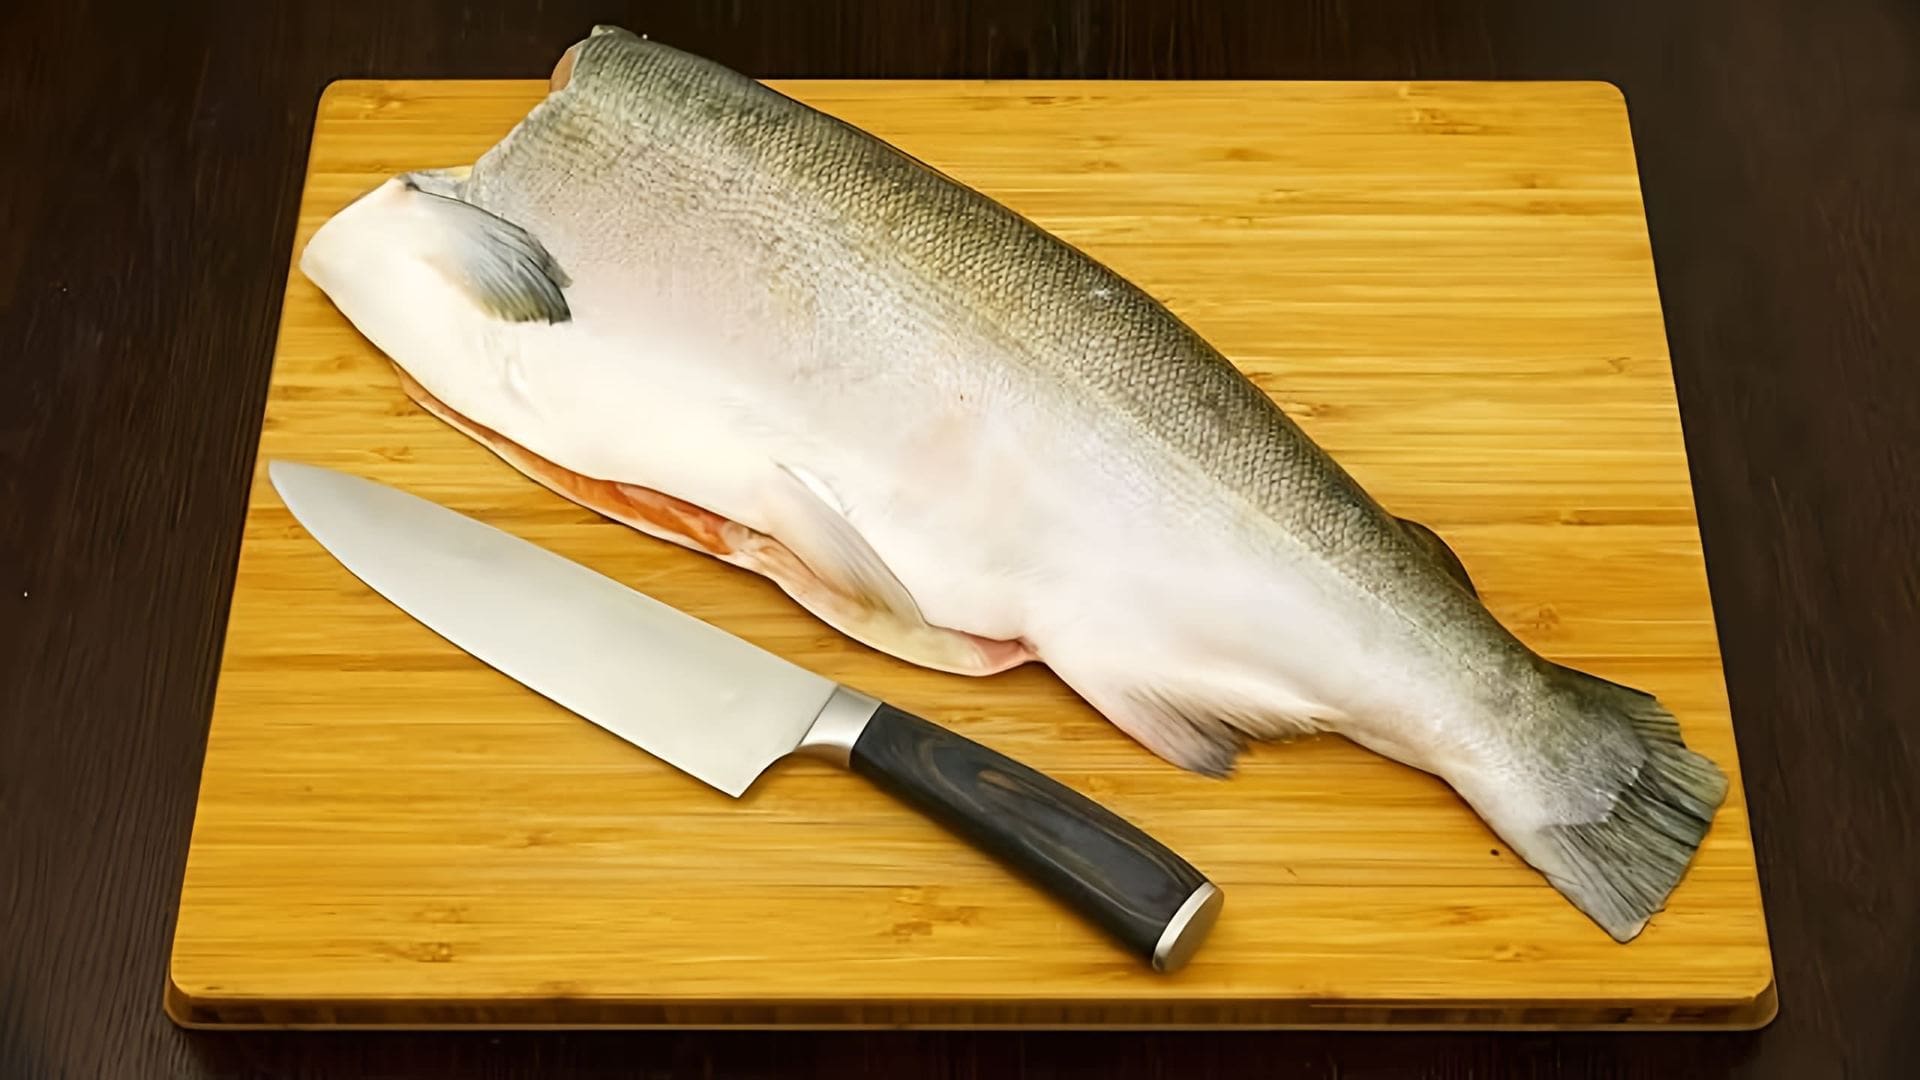 Видео показывает 5 рецептов рыбных блюд, подходящих как для праздников, так и для повседневных приемов пищи